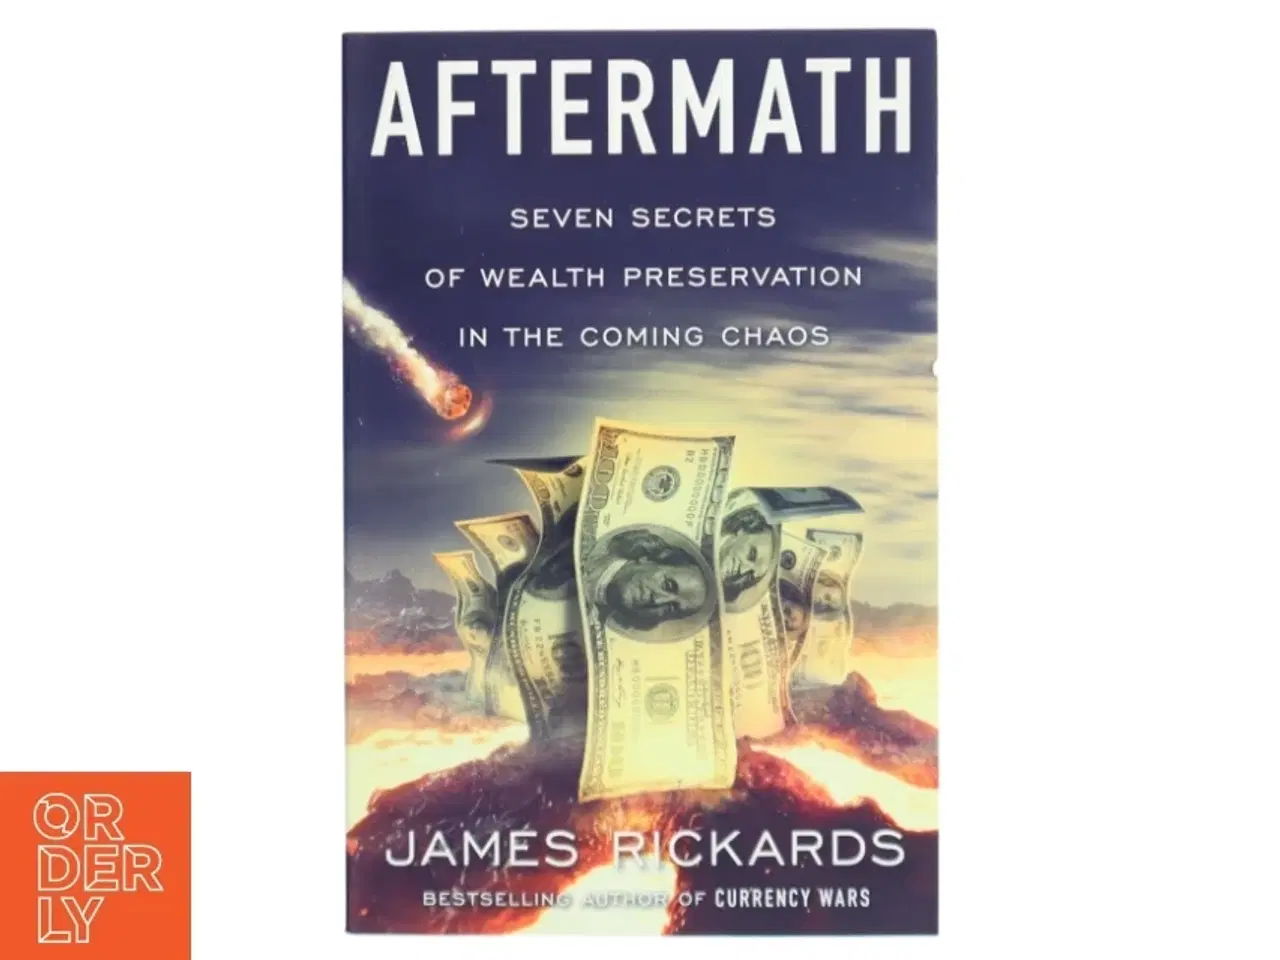 Billede 1 - 'Aftermath: seven secrets of wealth preservation in the coming chaos' af James Rickards (bog)